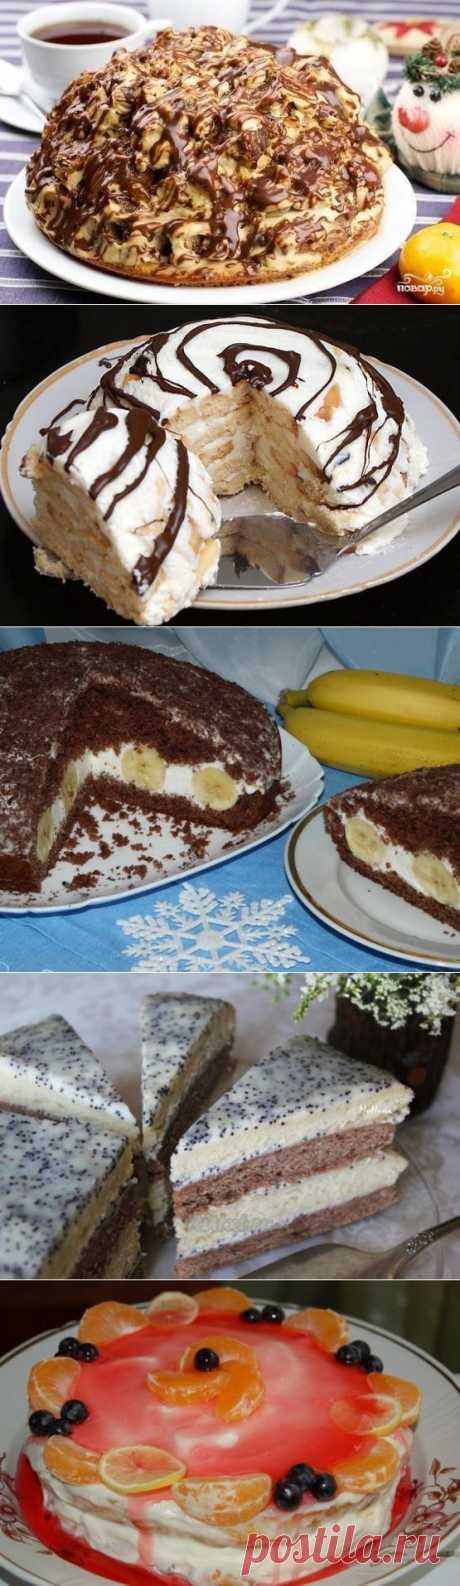 10 вкуснейших домашних тортиков | Хитрости Жизни